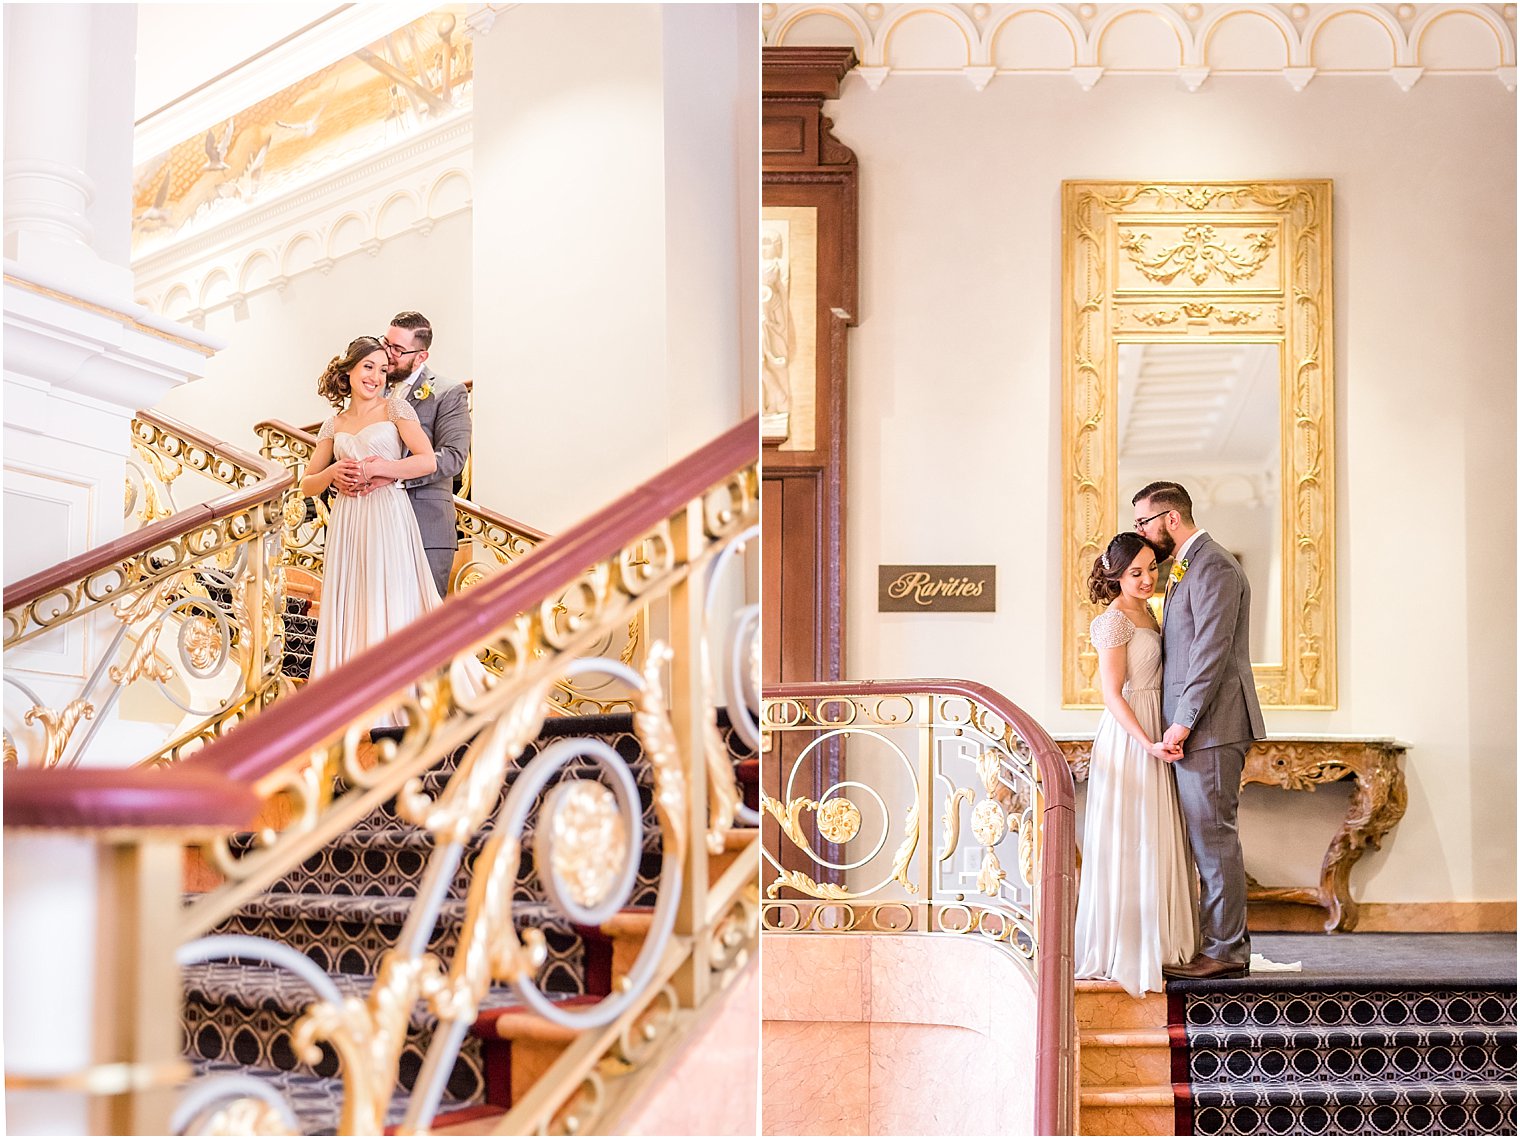 Lotte Palace New York Hotel Wedding | Idalia Photography